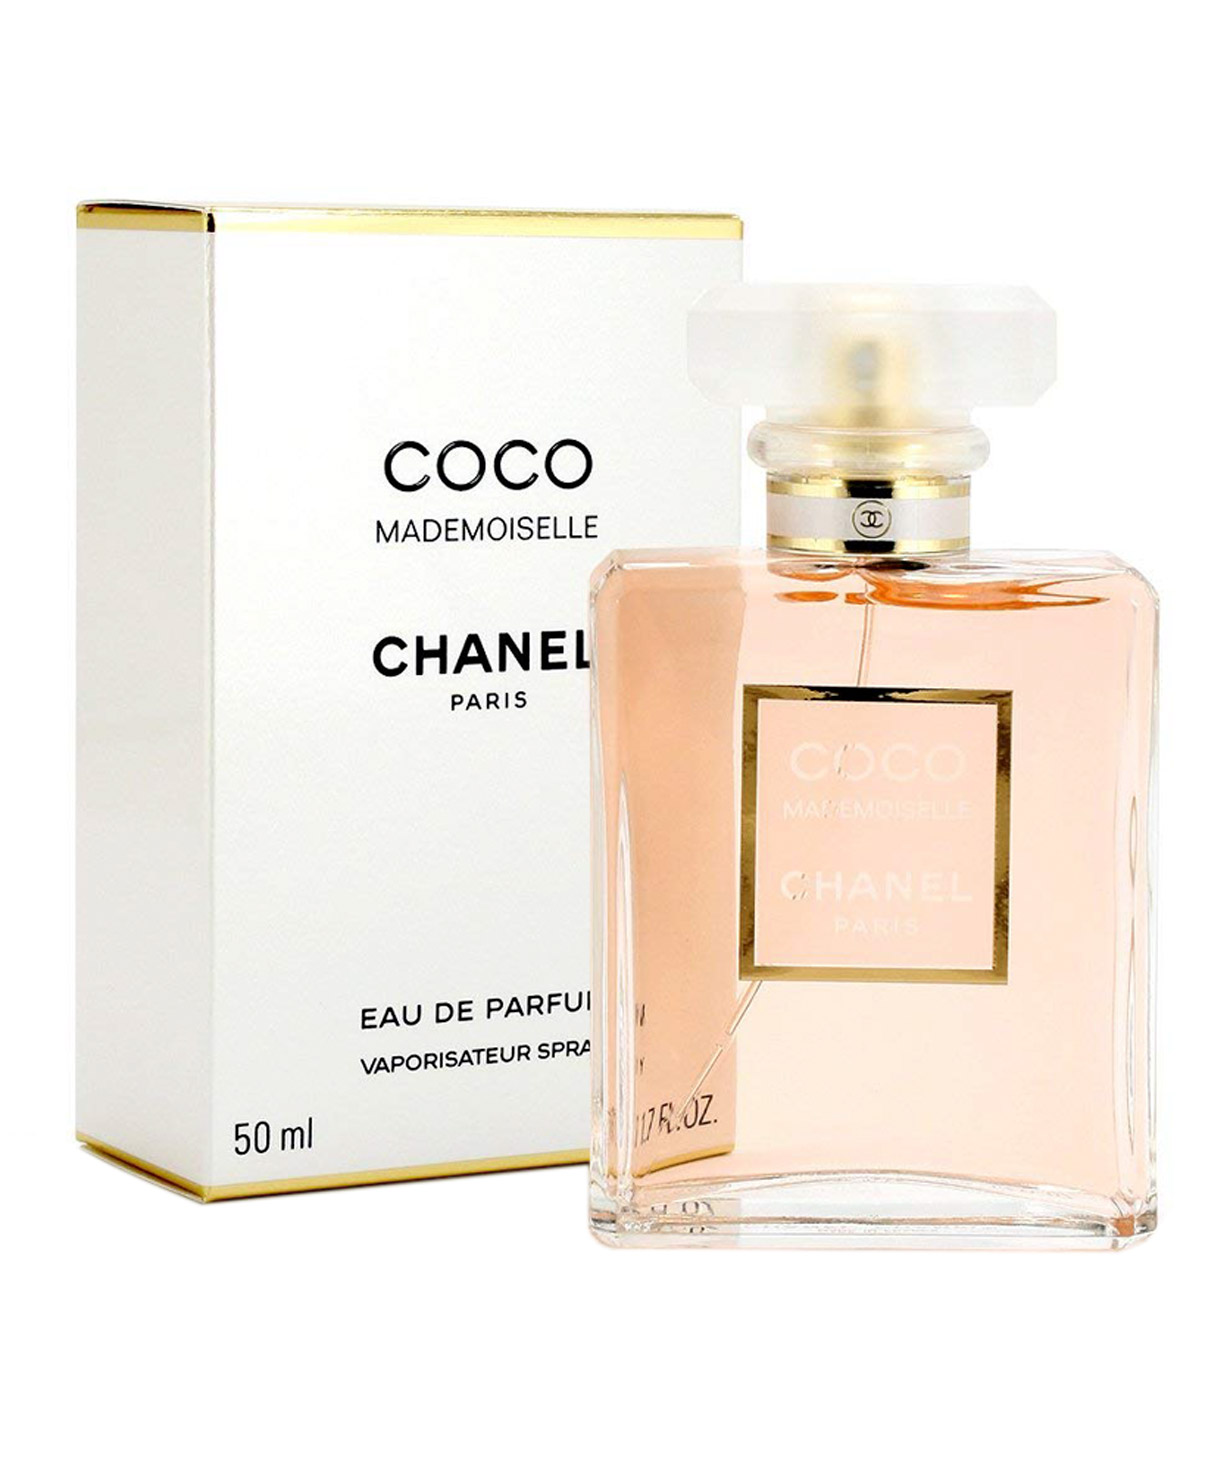 Օծանելիք «Chanel mademoiselle» eau de parfum կանացի